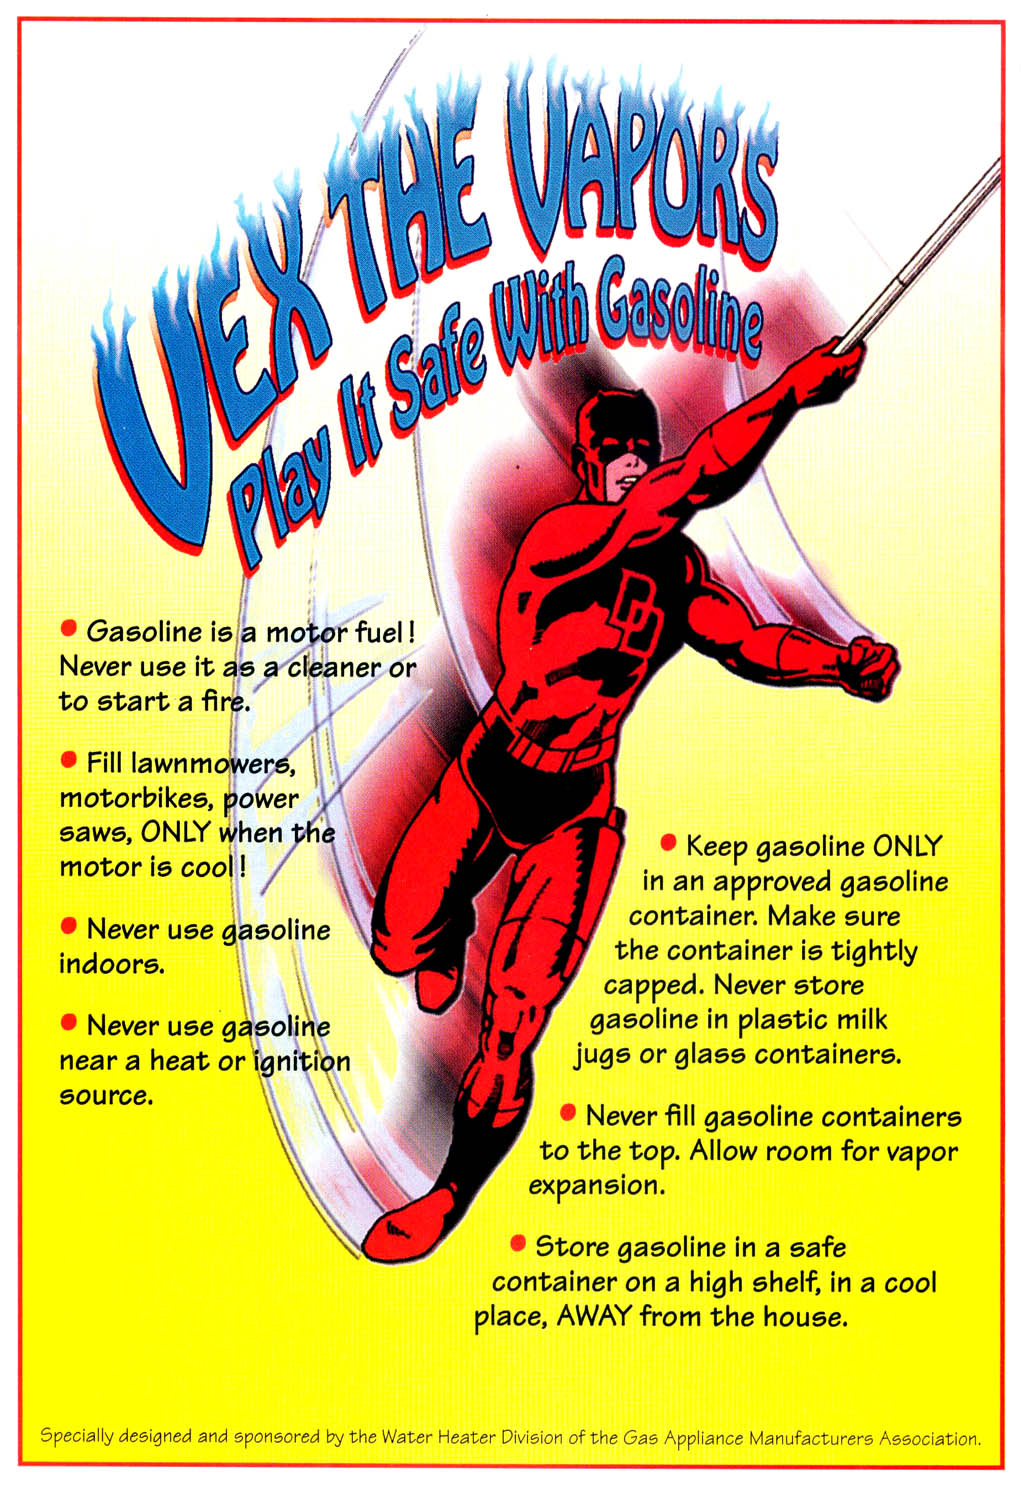 Read online Daredevil vs. Vapora comic -  Issue # Full - 19